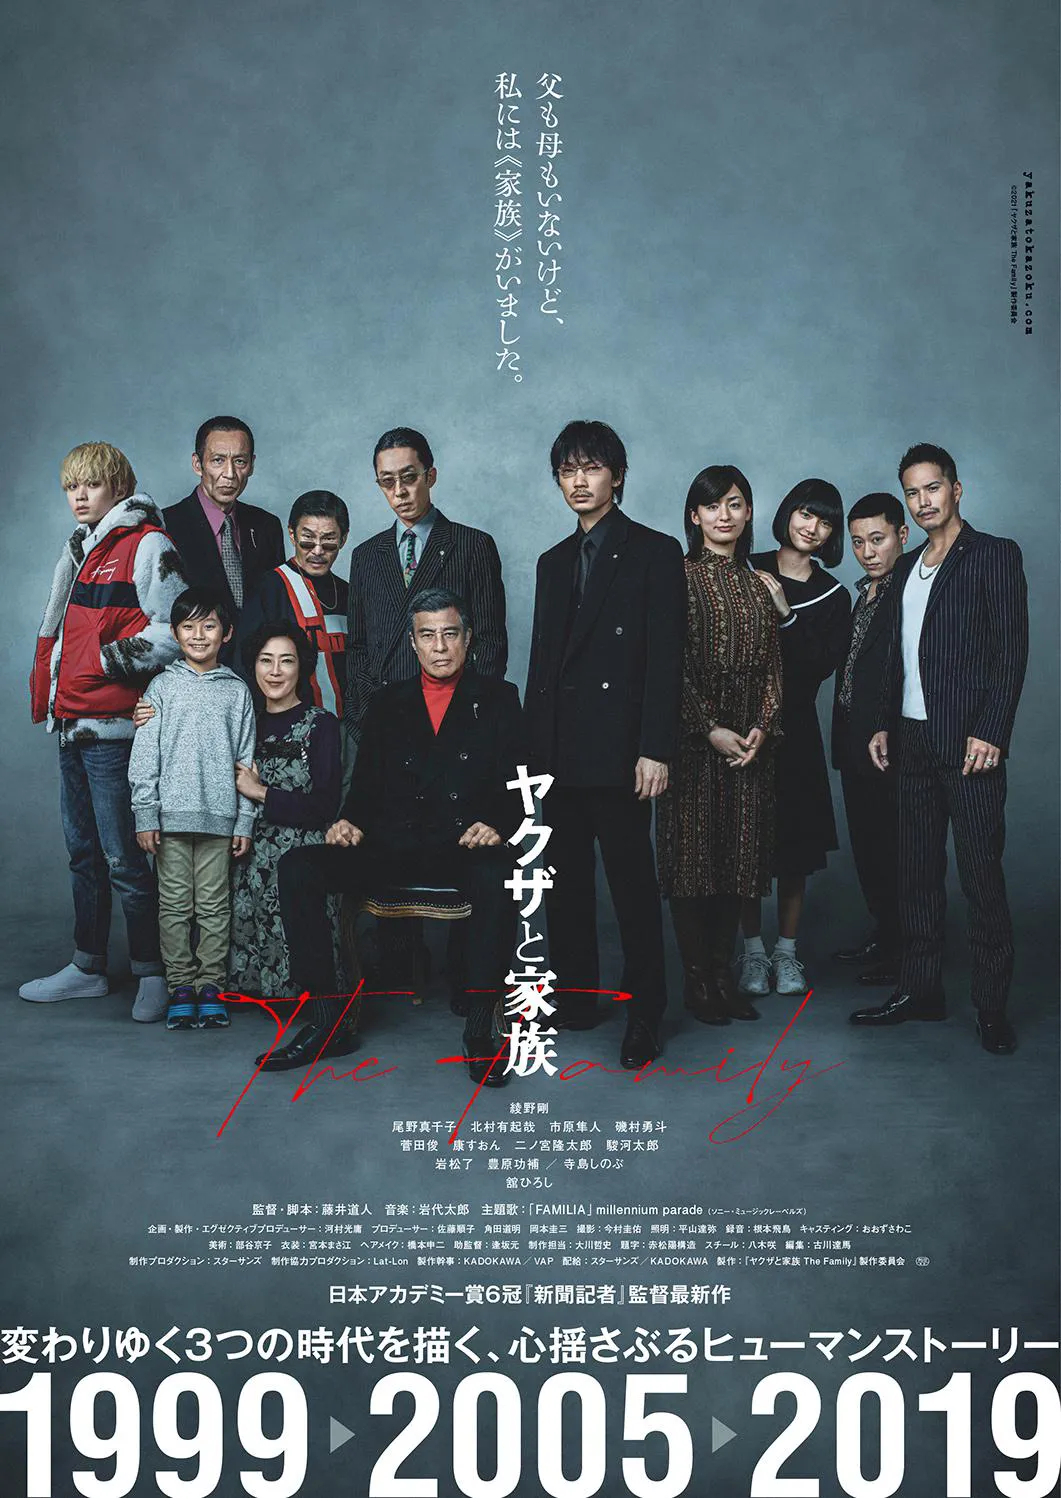 映画「ヤクザと家族 The Family」は1月29日(金)に公開